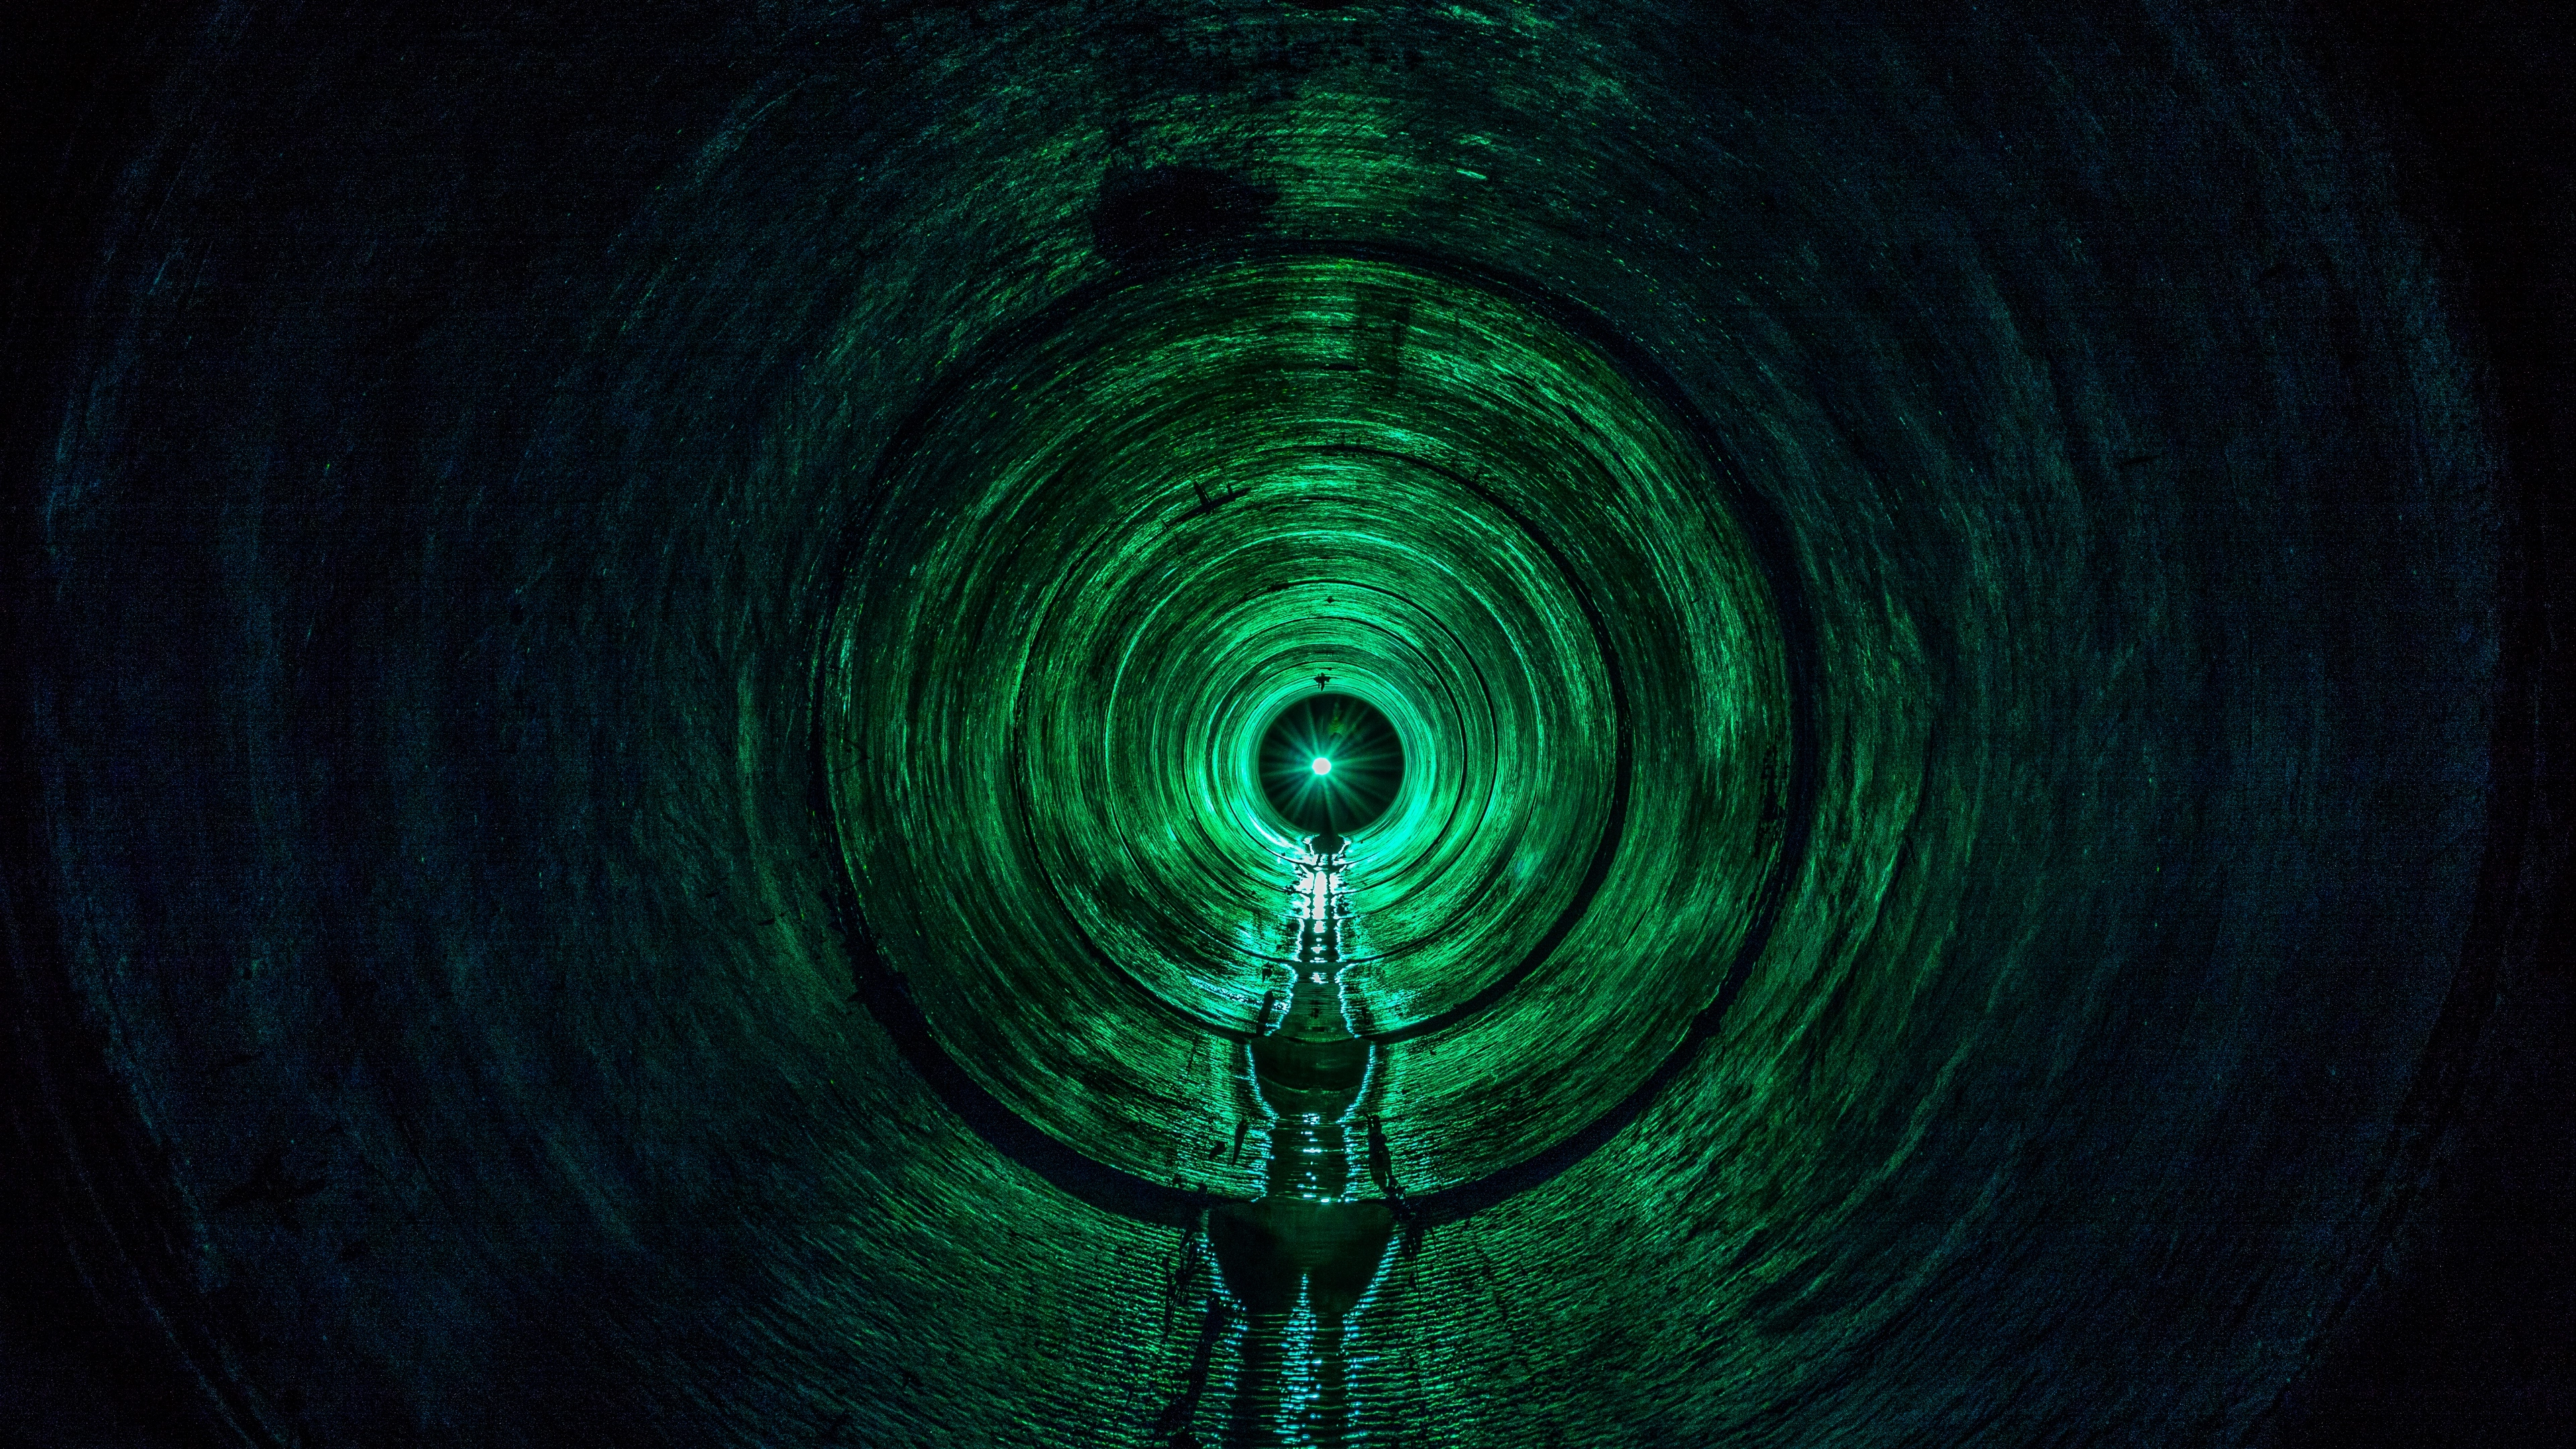 tunnel light green dark 4k 1540576116 - tunnel, light, green, dark 4k - Tunnel, Light, green